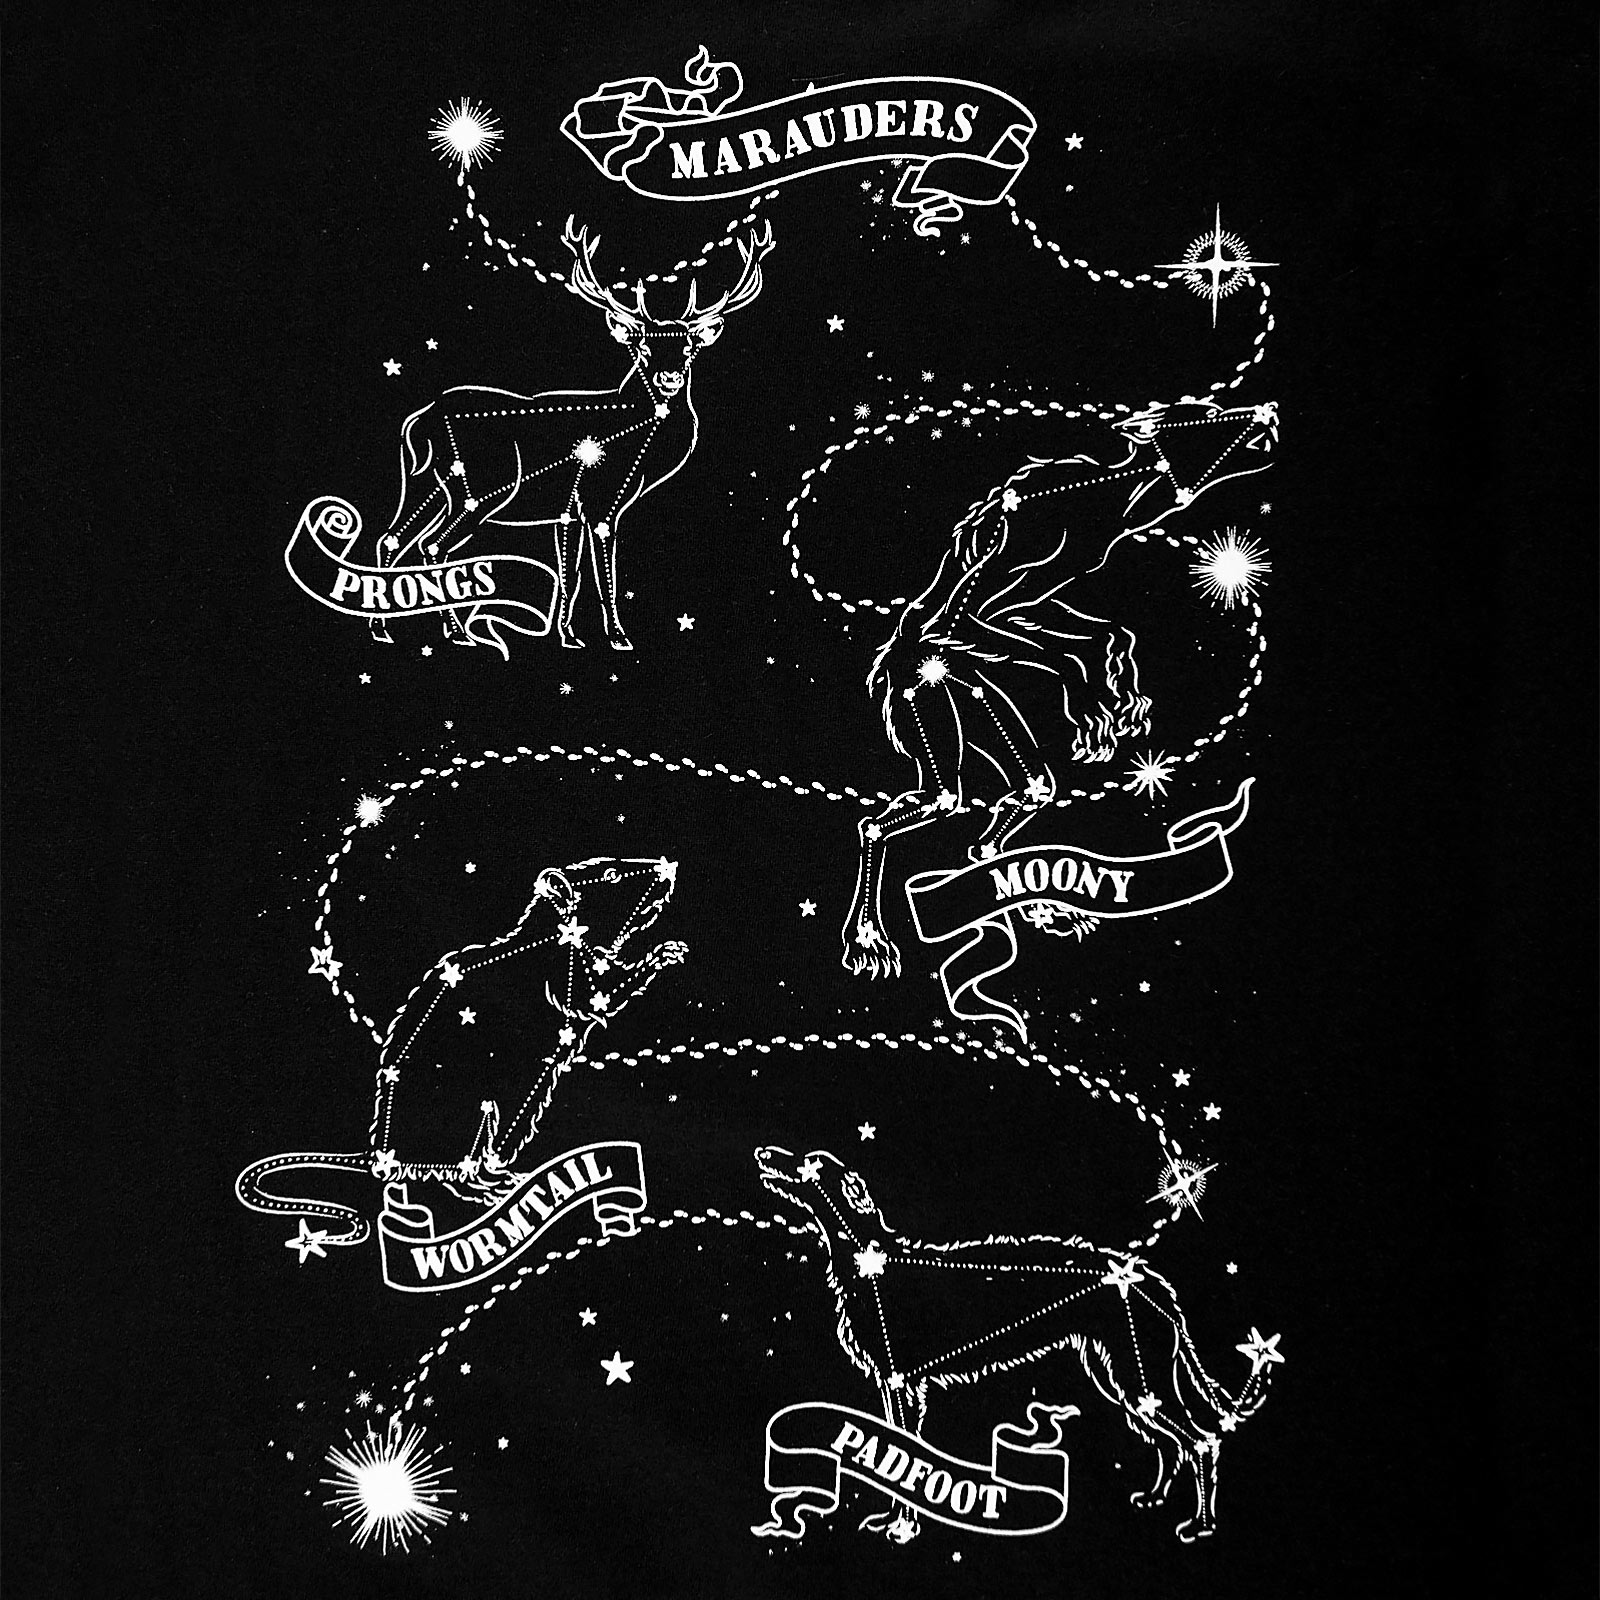 Harry Potter - Marauders Astrology T-Shirt schwarz